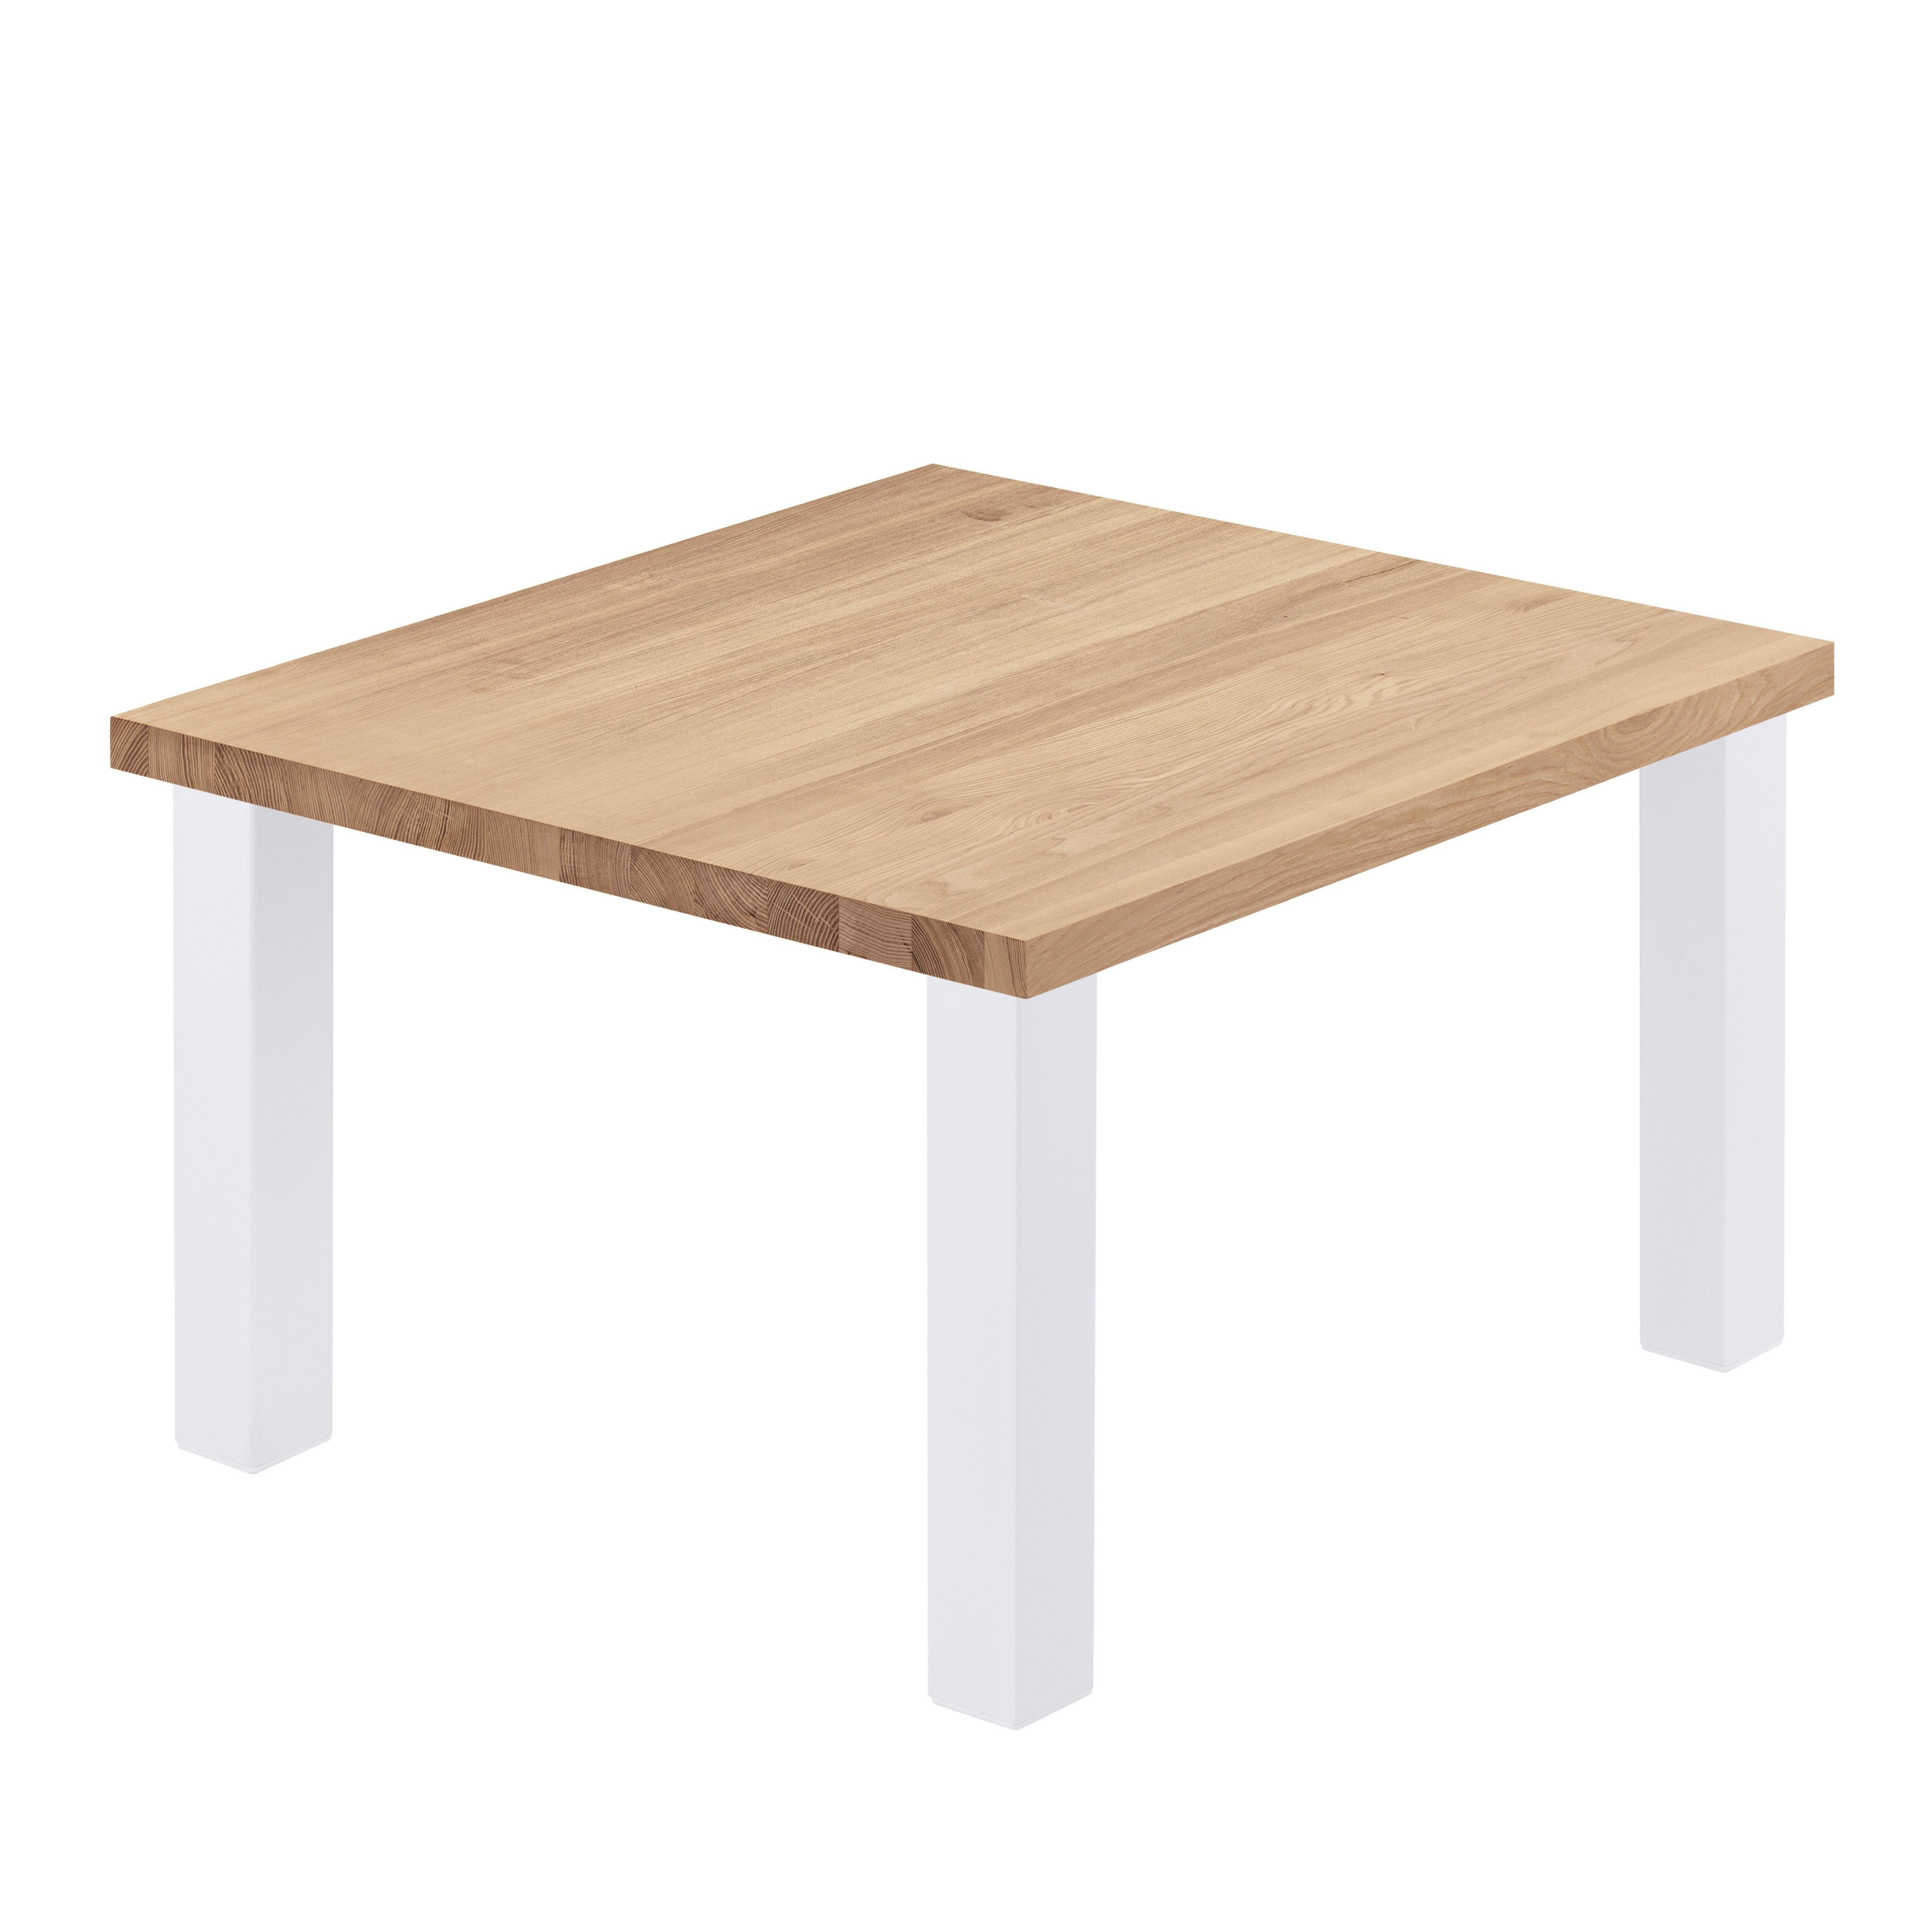 LAMO Manufaktur Esstisch Classic Massivholz (1 Natur Tischplatte Weiß Metallgestell gerade Küchentisch inkl. | Tisch), Kante